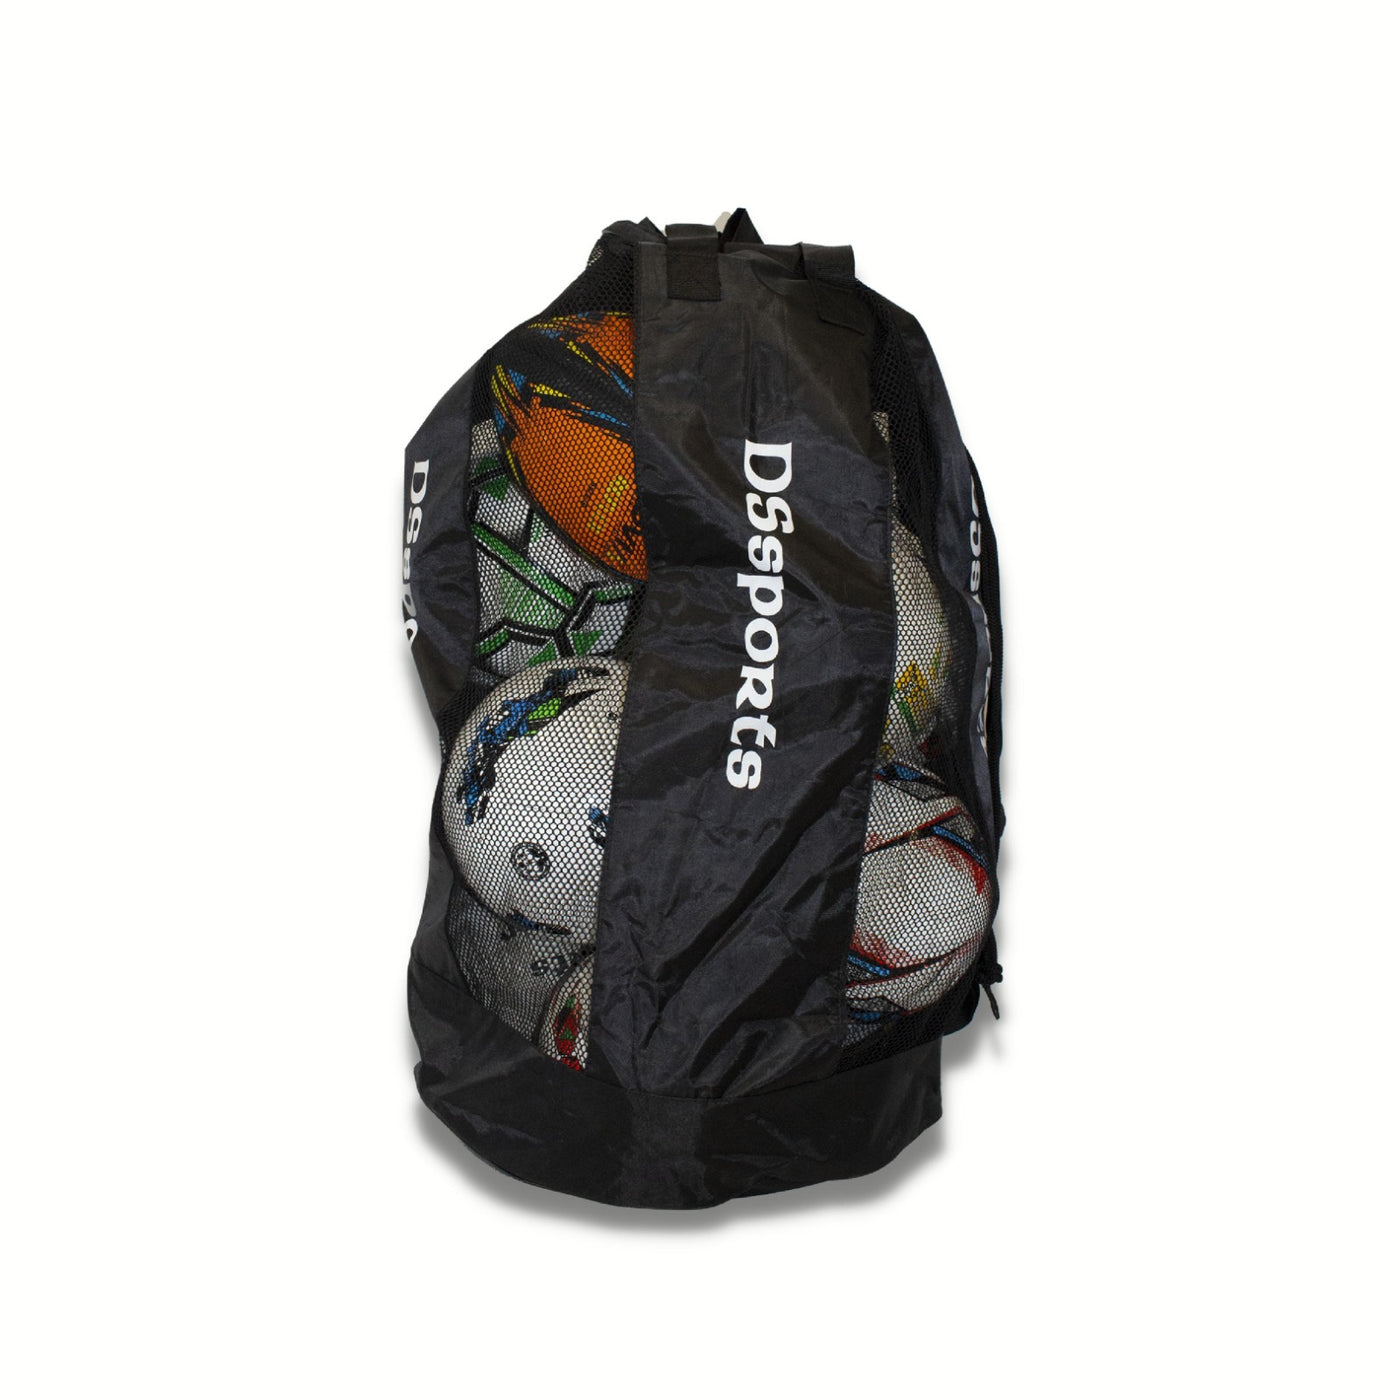 Ball Carrier Bag